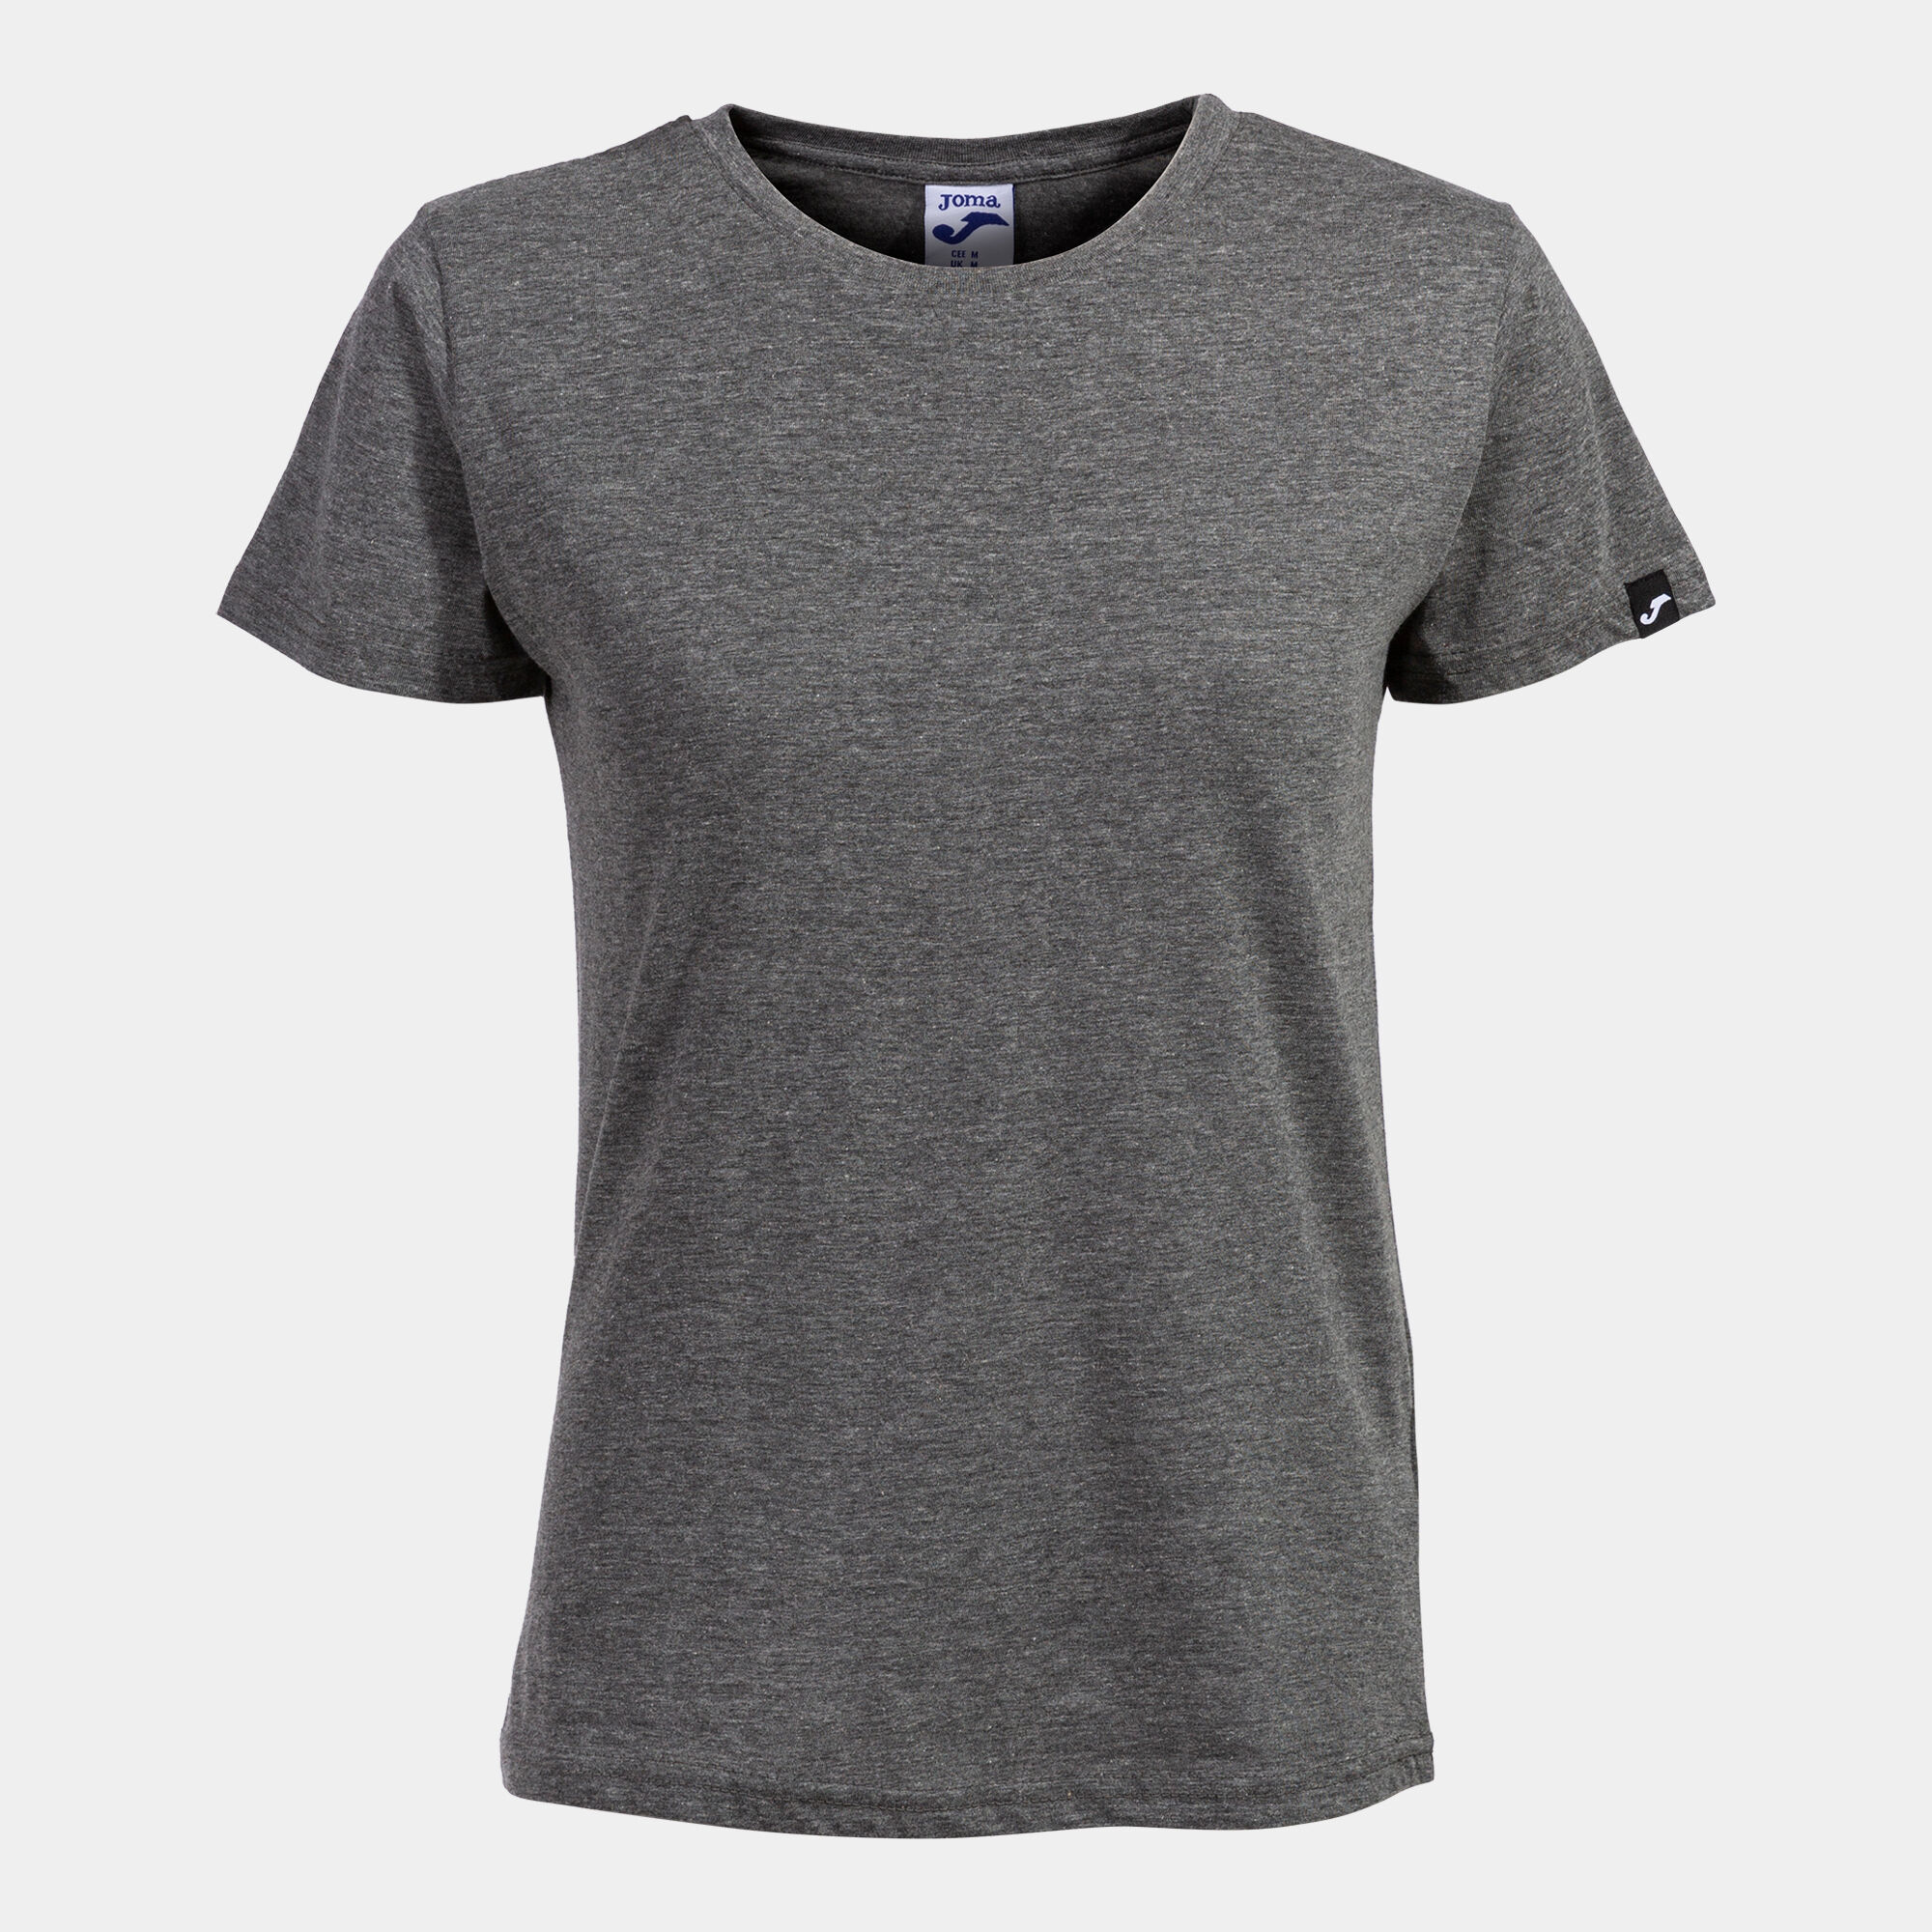 Camiseta manga corta mujer Desert gris melange